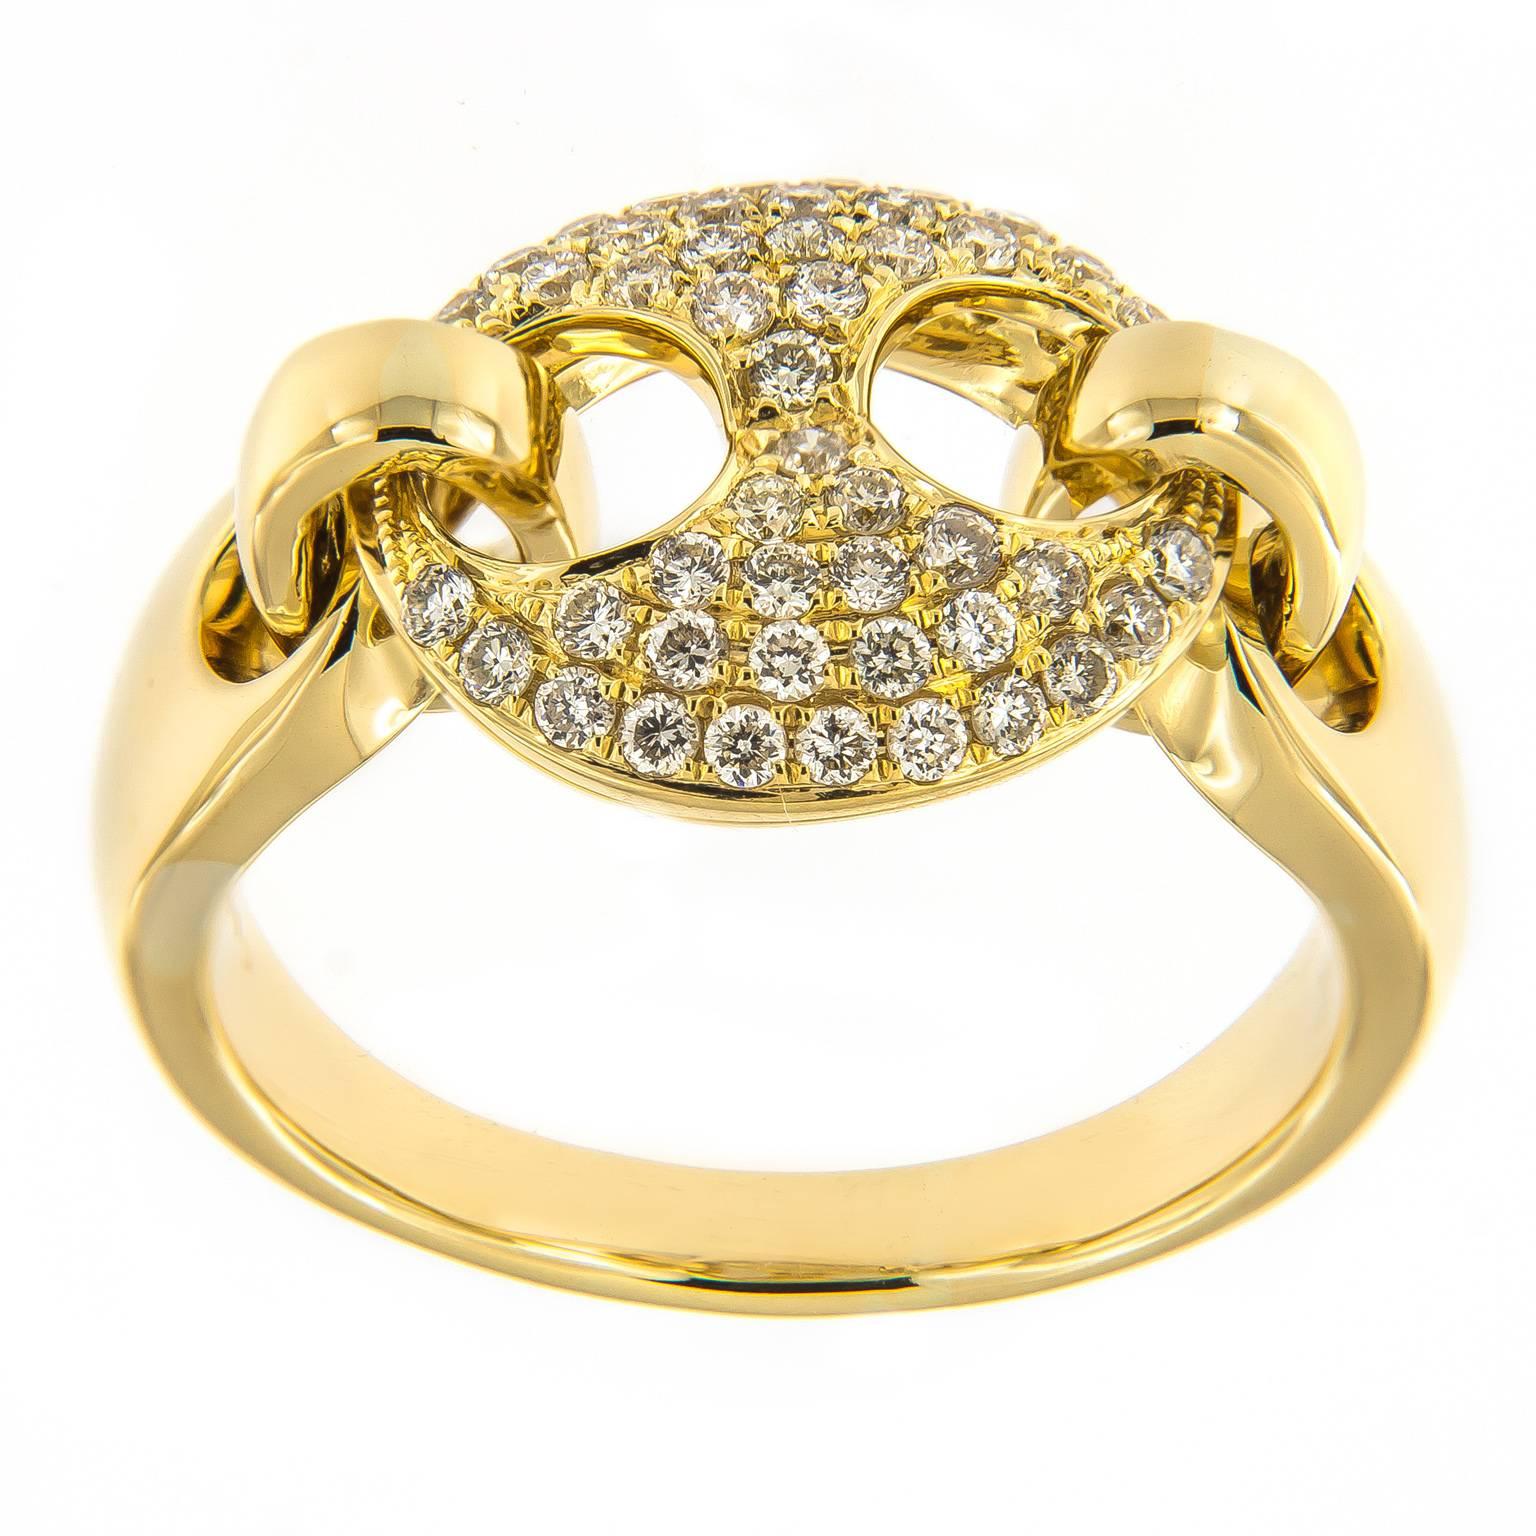 Setzen Sie ein atemberaubendes Statement mit diesem Ring aus 18 Karat Gelbgold, in dessen Mittelpunkt ein ikonisches, mit einem halben Karat feiner Diamanten besetztes, bewegliches Glied im Gucci-Stil steht. Das Uhrwerk fängt das Funkeln der